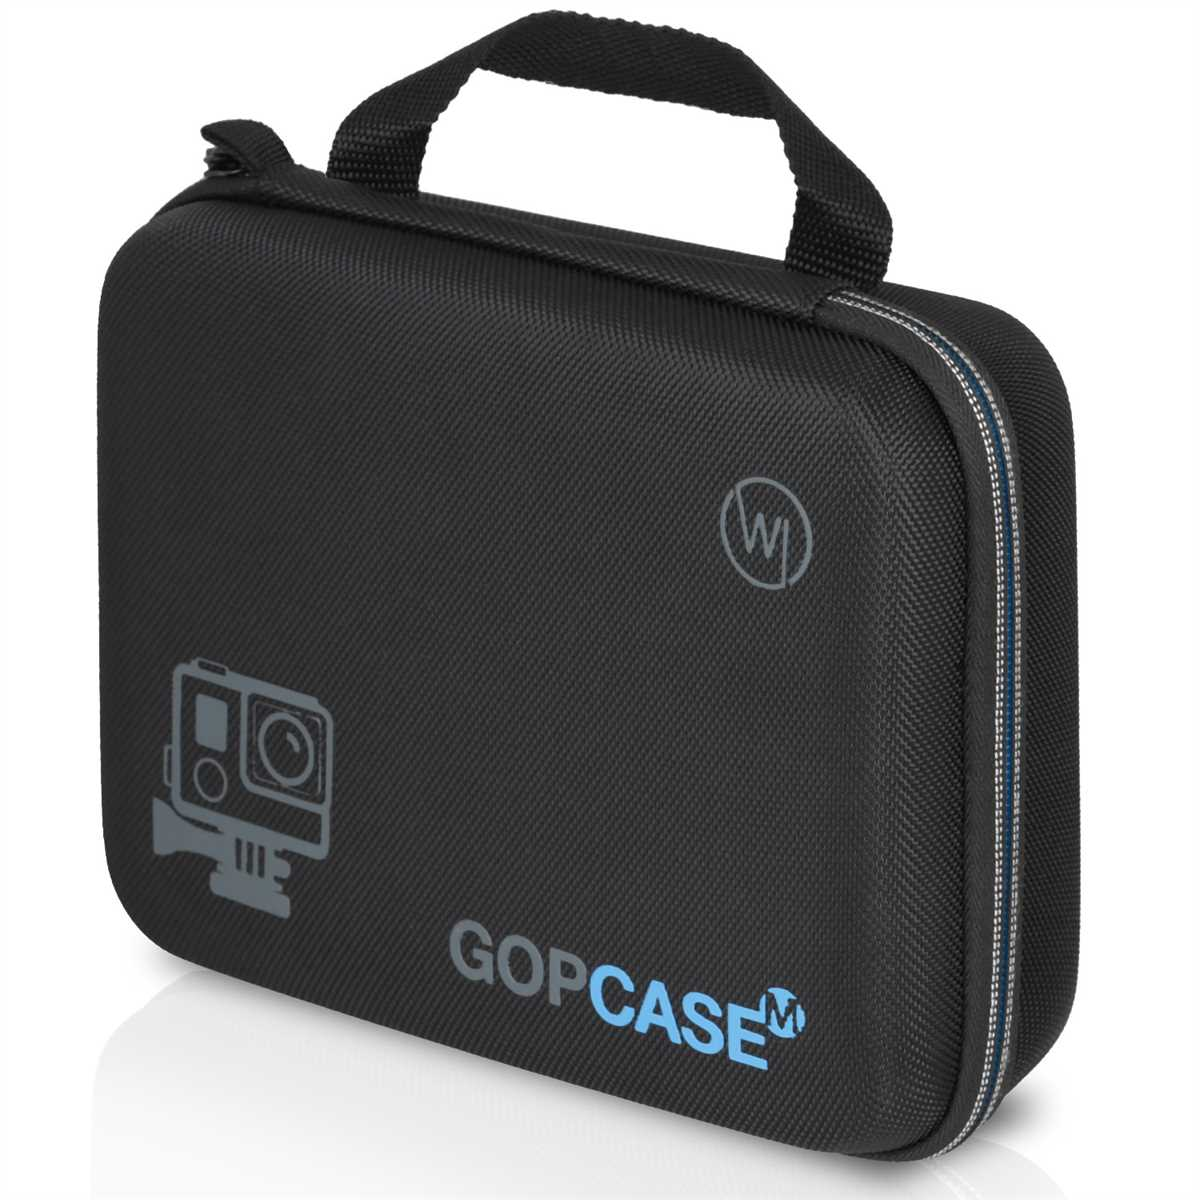 Case, Tragetasche mit Tasche, schwarz Gr. 10 Actioncam 9 12 8 Schutztasche, CHILI Zubehörfach, GoPro Koffer WICKED Hero für 11 M